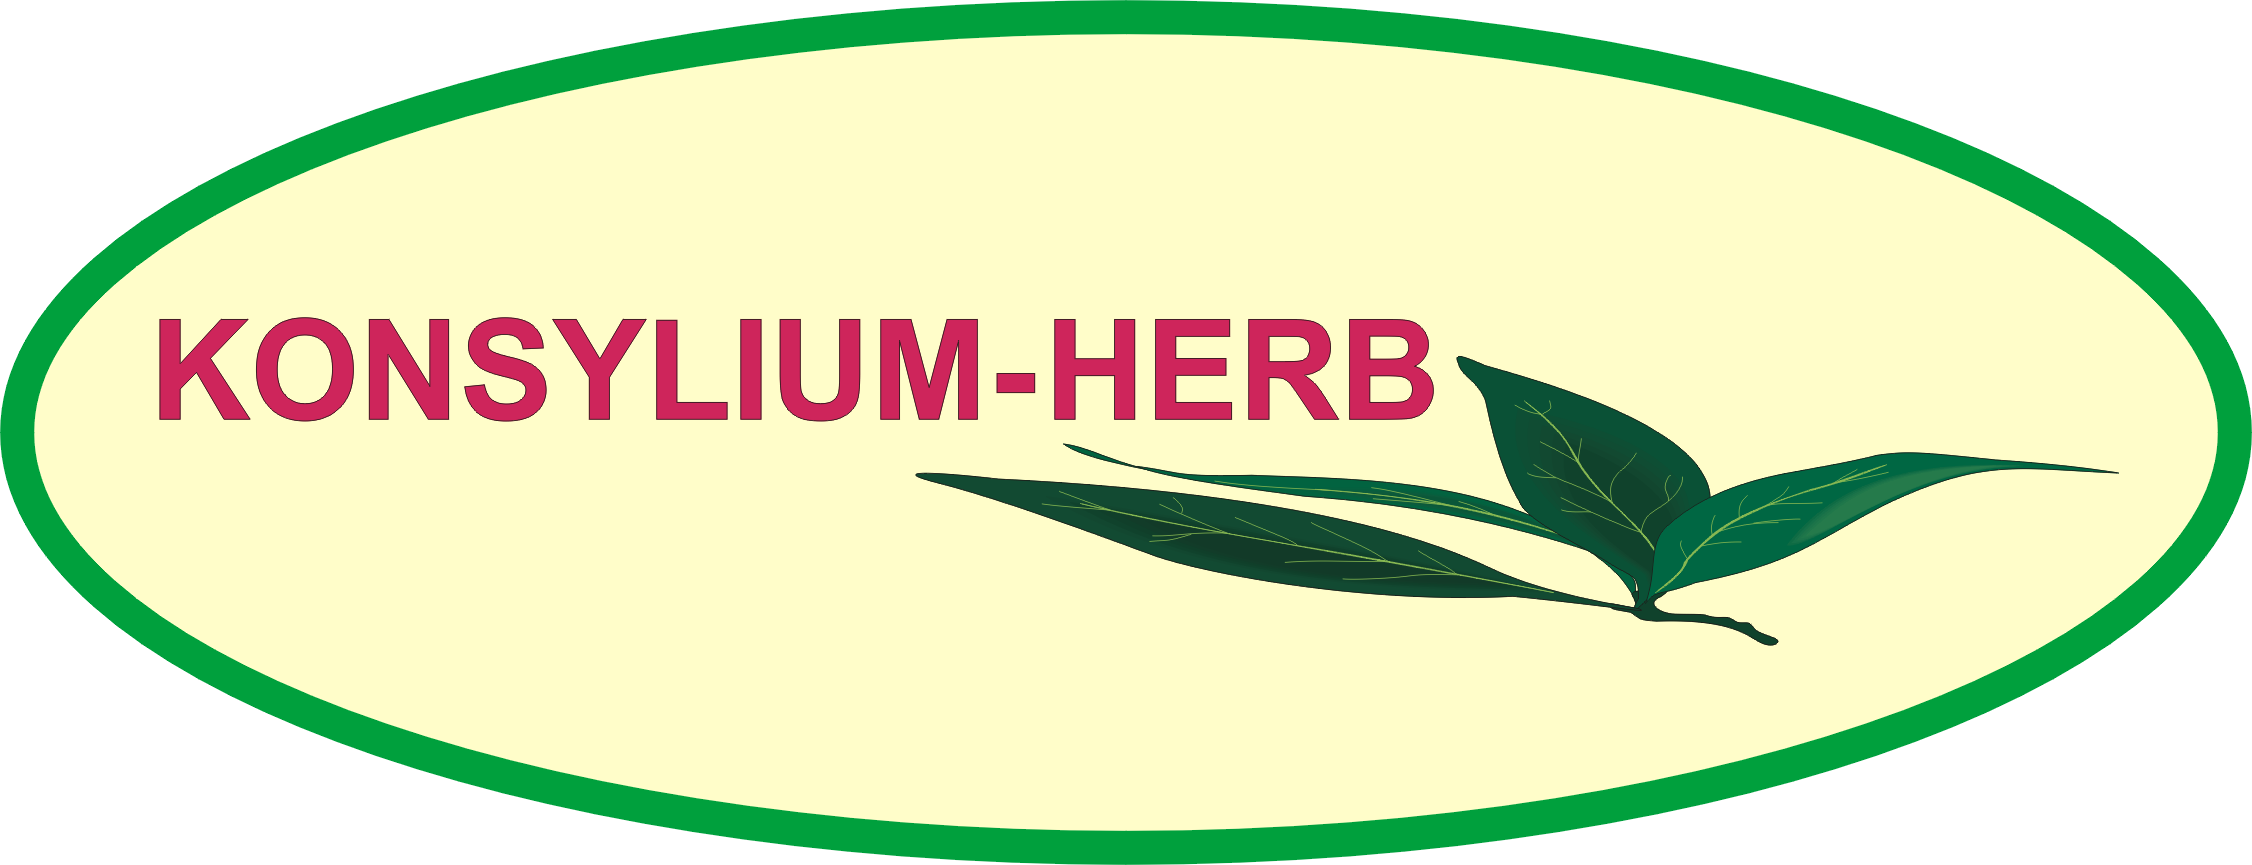 logo konsylium-herb